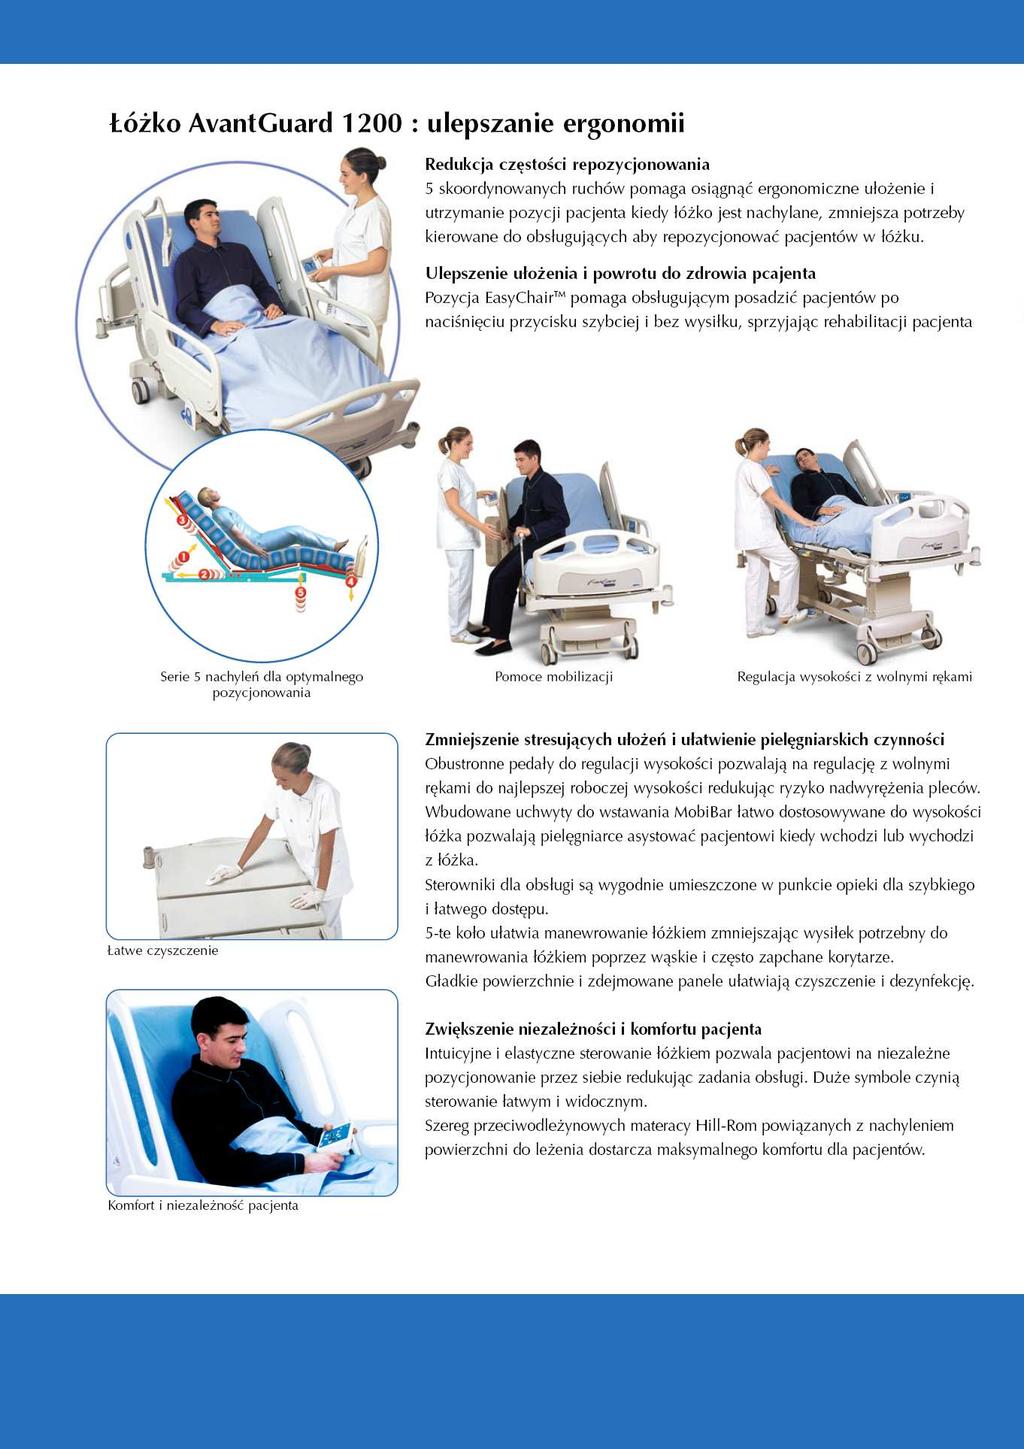 Łóżko AvantGuard 1200: doskonała ergonomia Redukcja częstości repozycjonowania 5 skoordynowanych ruchów łóżka pomaga osiągnąć ergonomiczne ułożenie i utrzymanie pozycji pacjenta, kiedy regulowane są